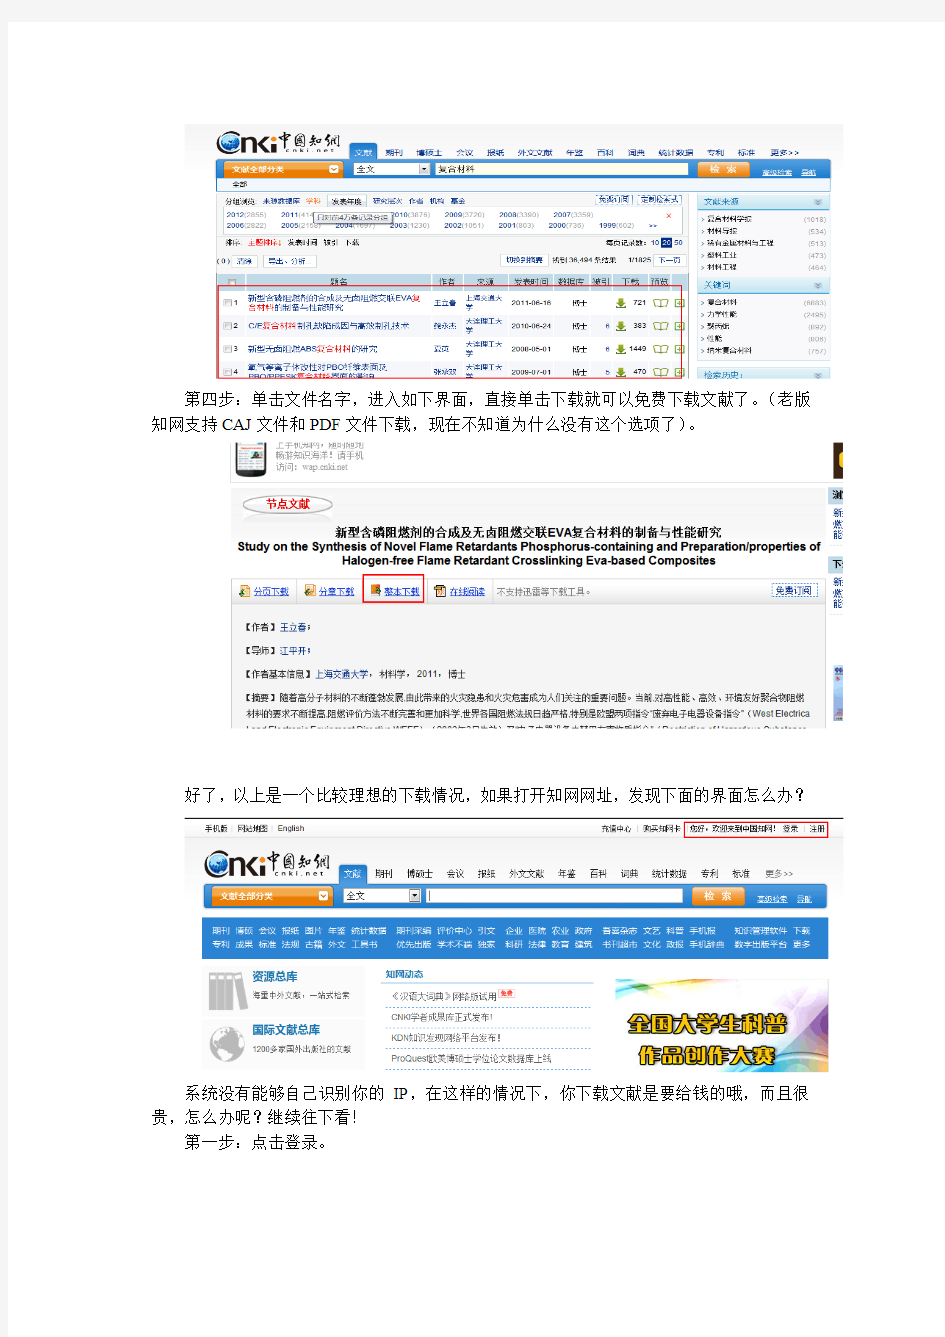 中国期刊网(中国知网)使用方法之登录和中文文献下载